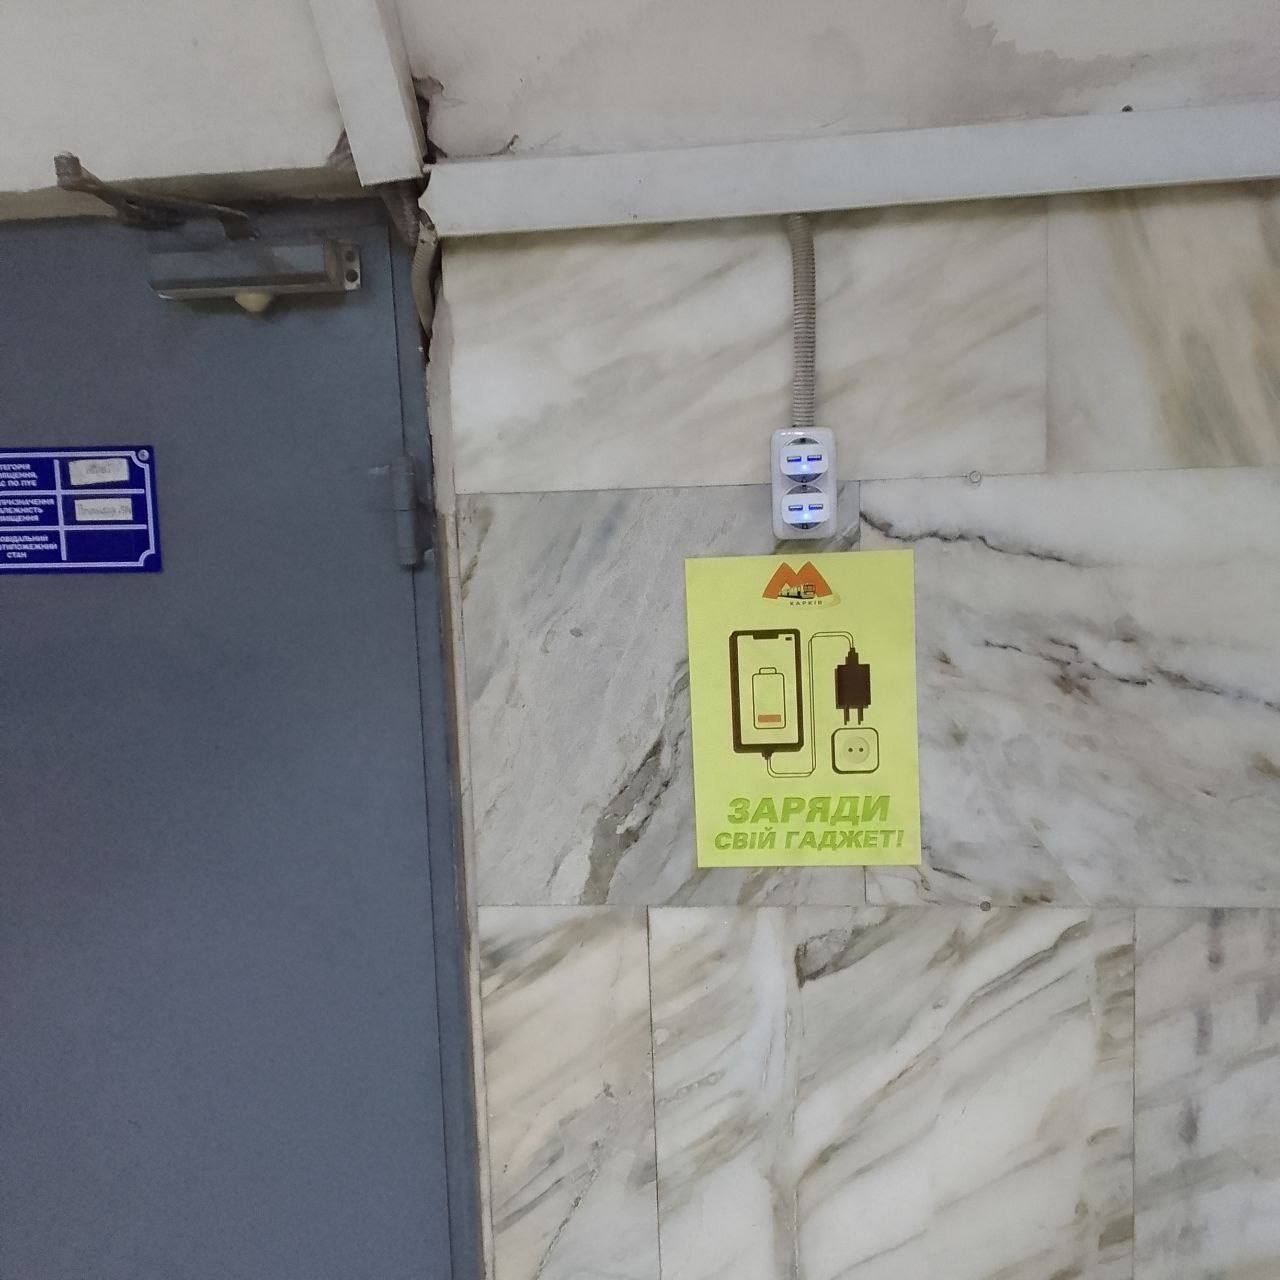 У метро Харкова можна зарядити гаджети - напис